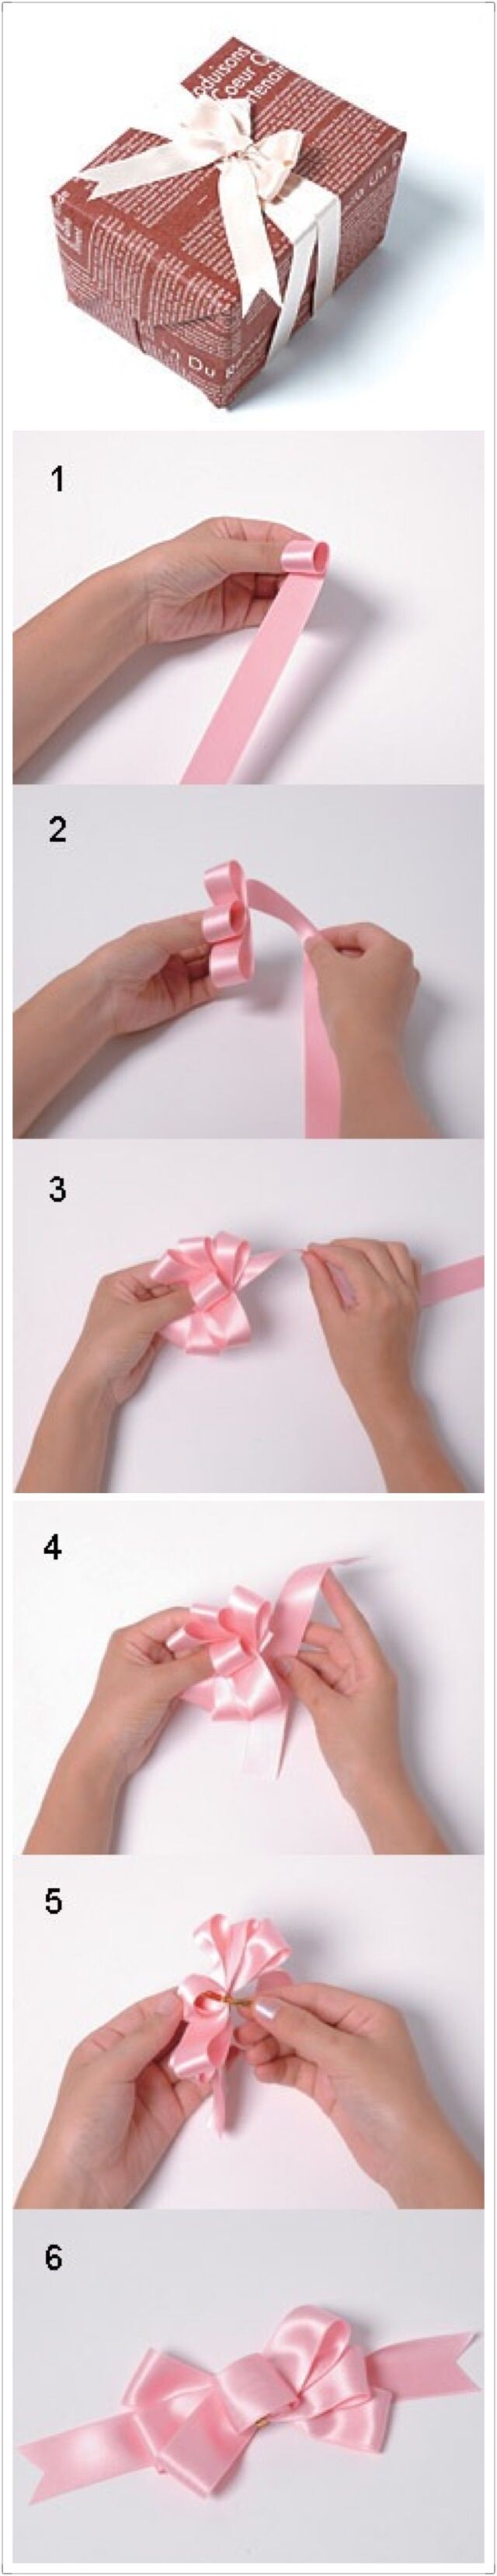 塑料丝带蝴蝶结的打法图片